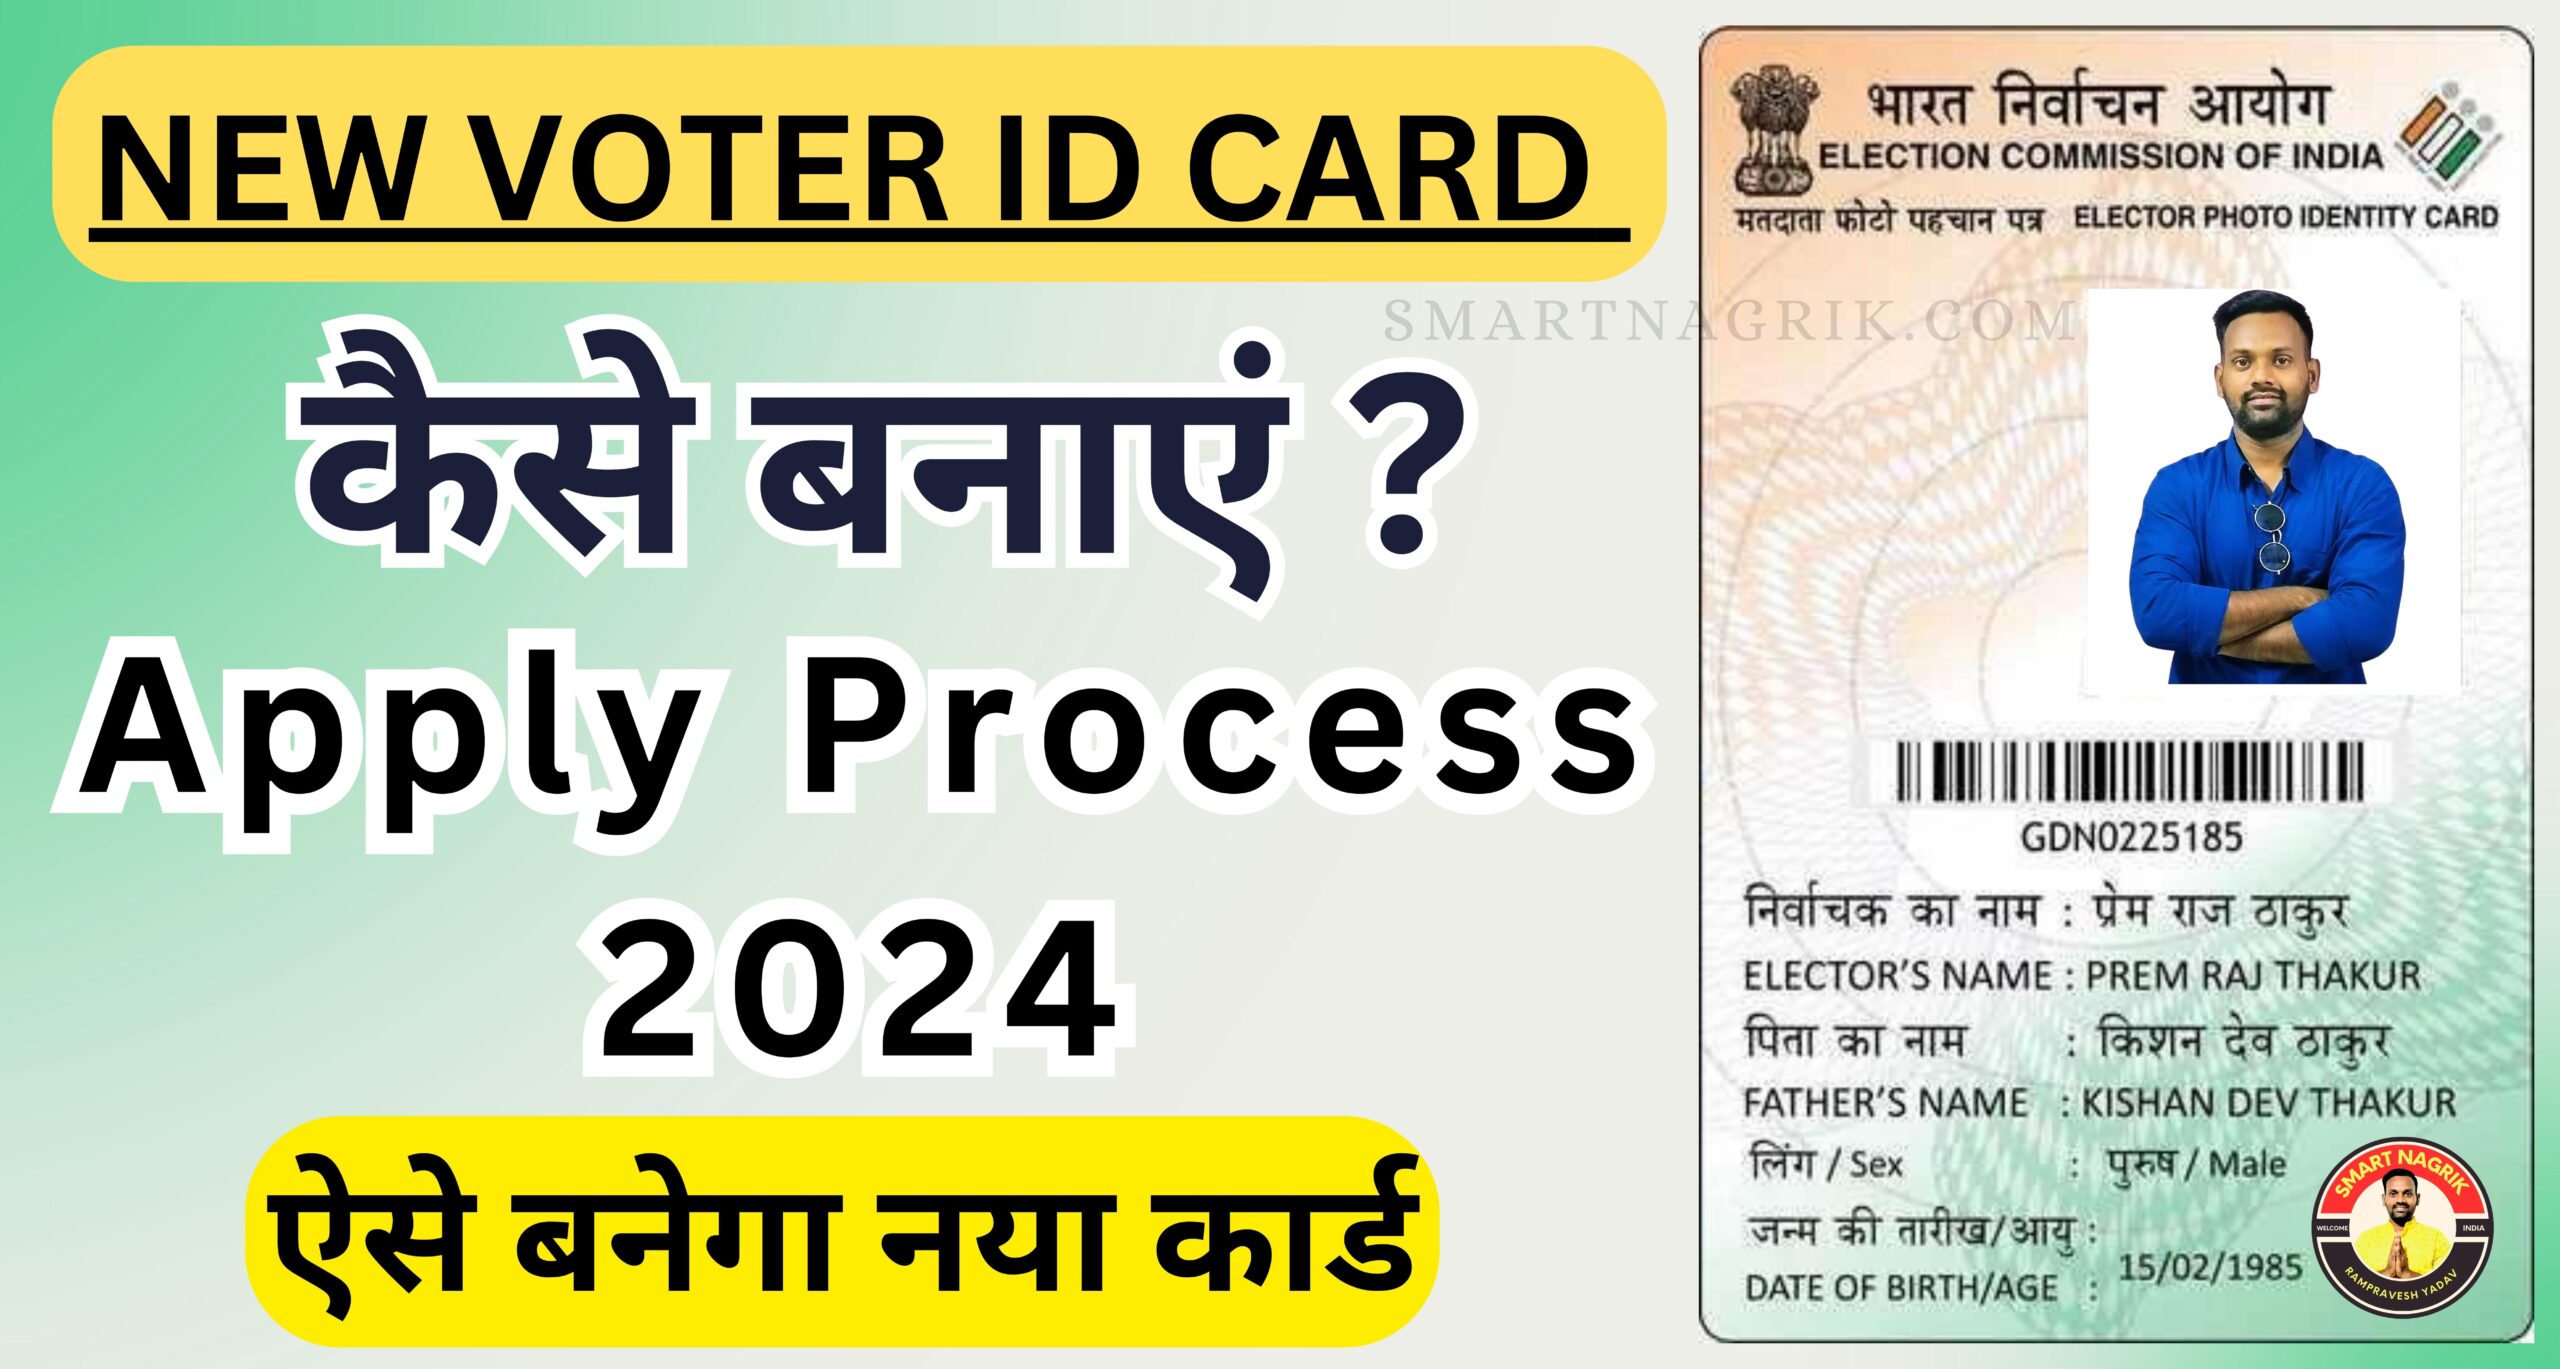 NEW VOTER ID CARD: 2024 ऐसे बनेगा नया VOTER ID CARD, पूरी जानकारी दी गई हैं यहां